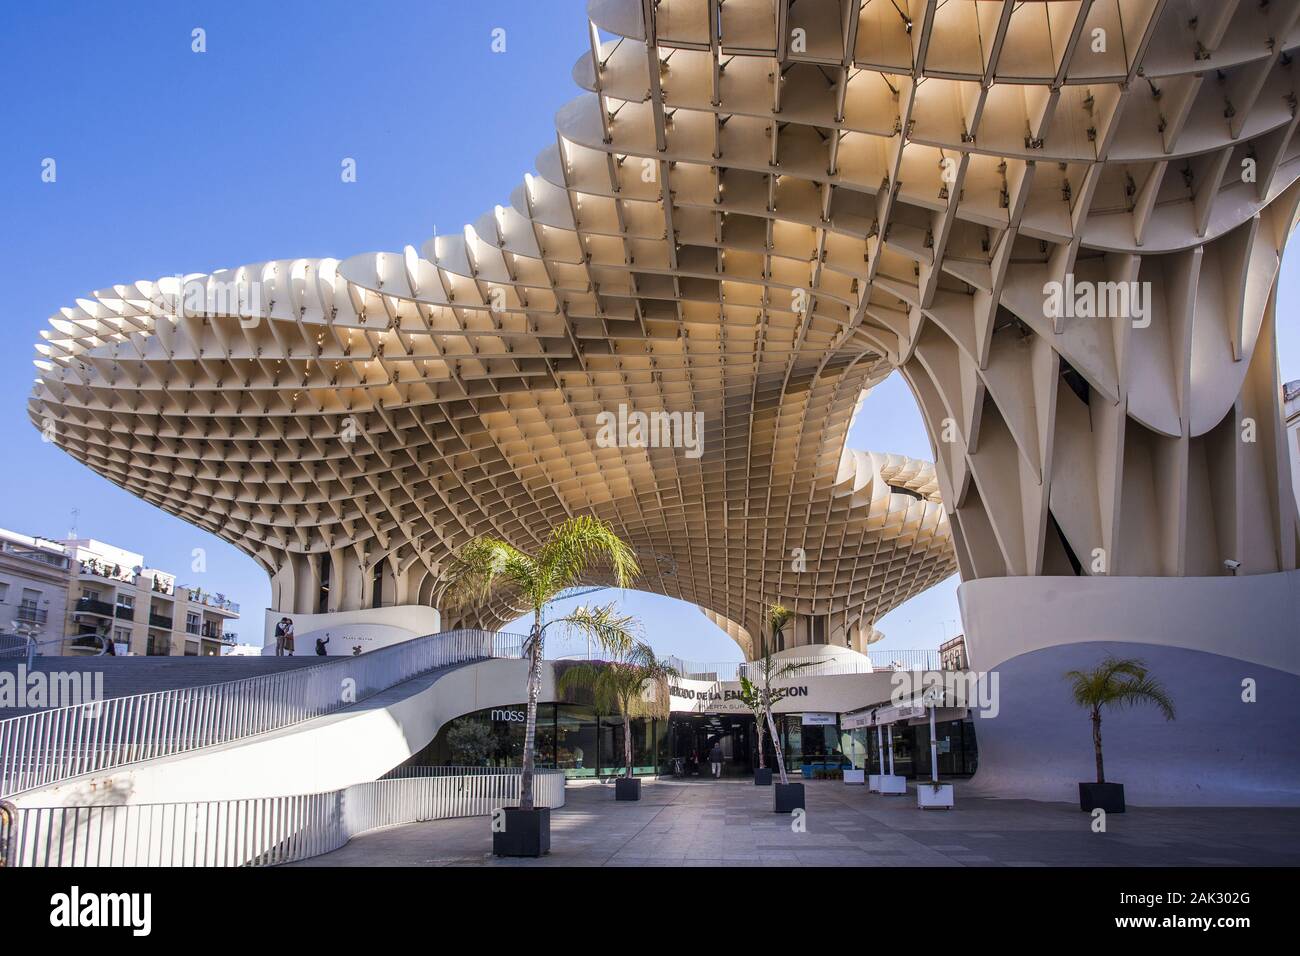 Provinz Sevilla Sevilla/Stadt : Metropol Parasol, spektakulaere Holzkonstruktion an der Plaza de la Encarnation, Andalusien | conditions dans le monde entier Banque D'Images